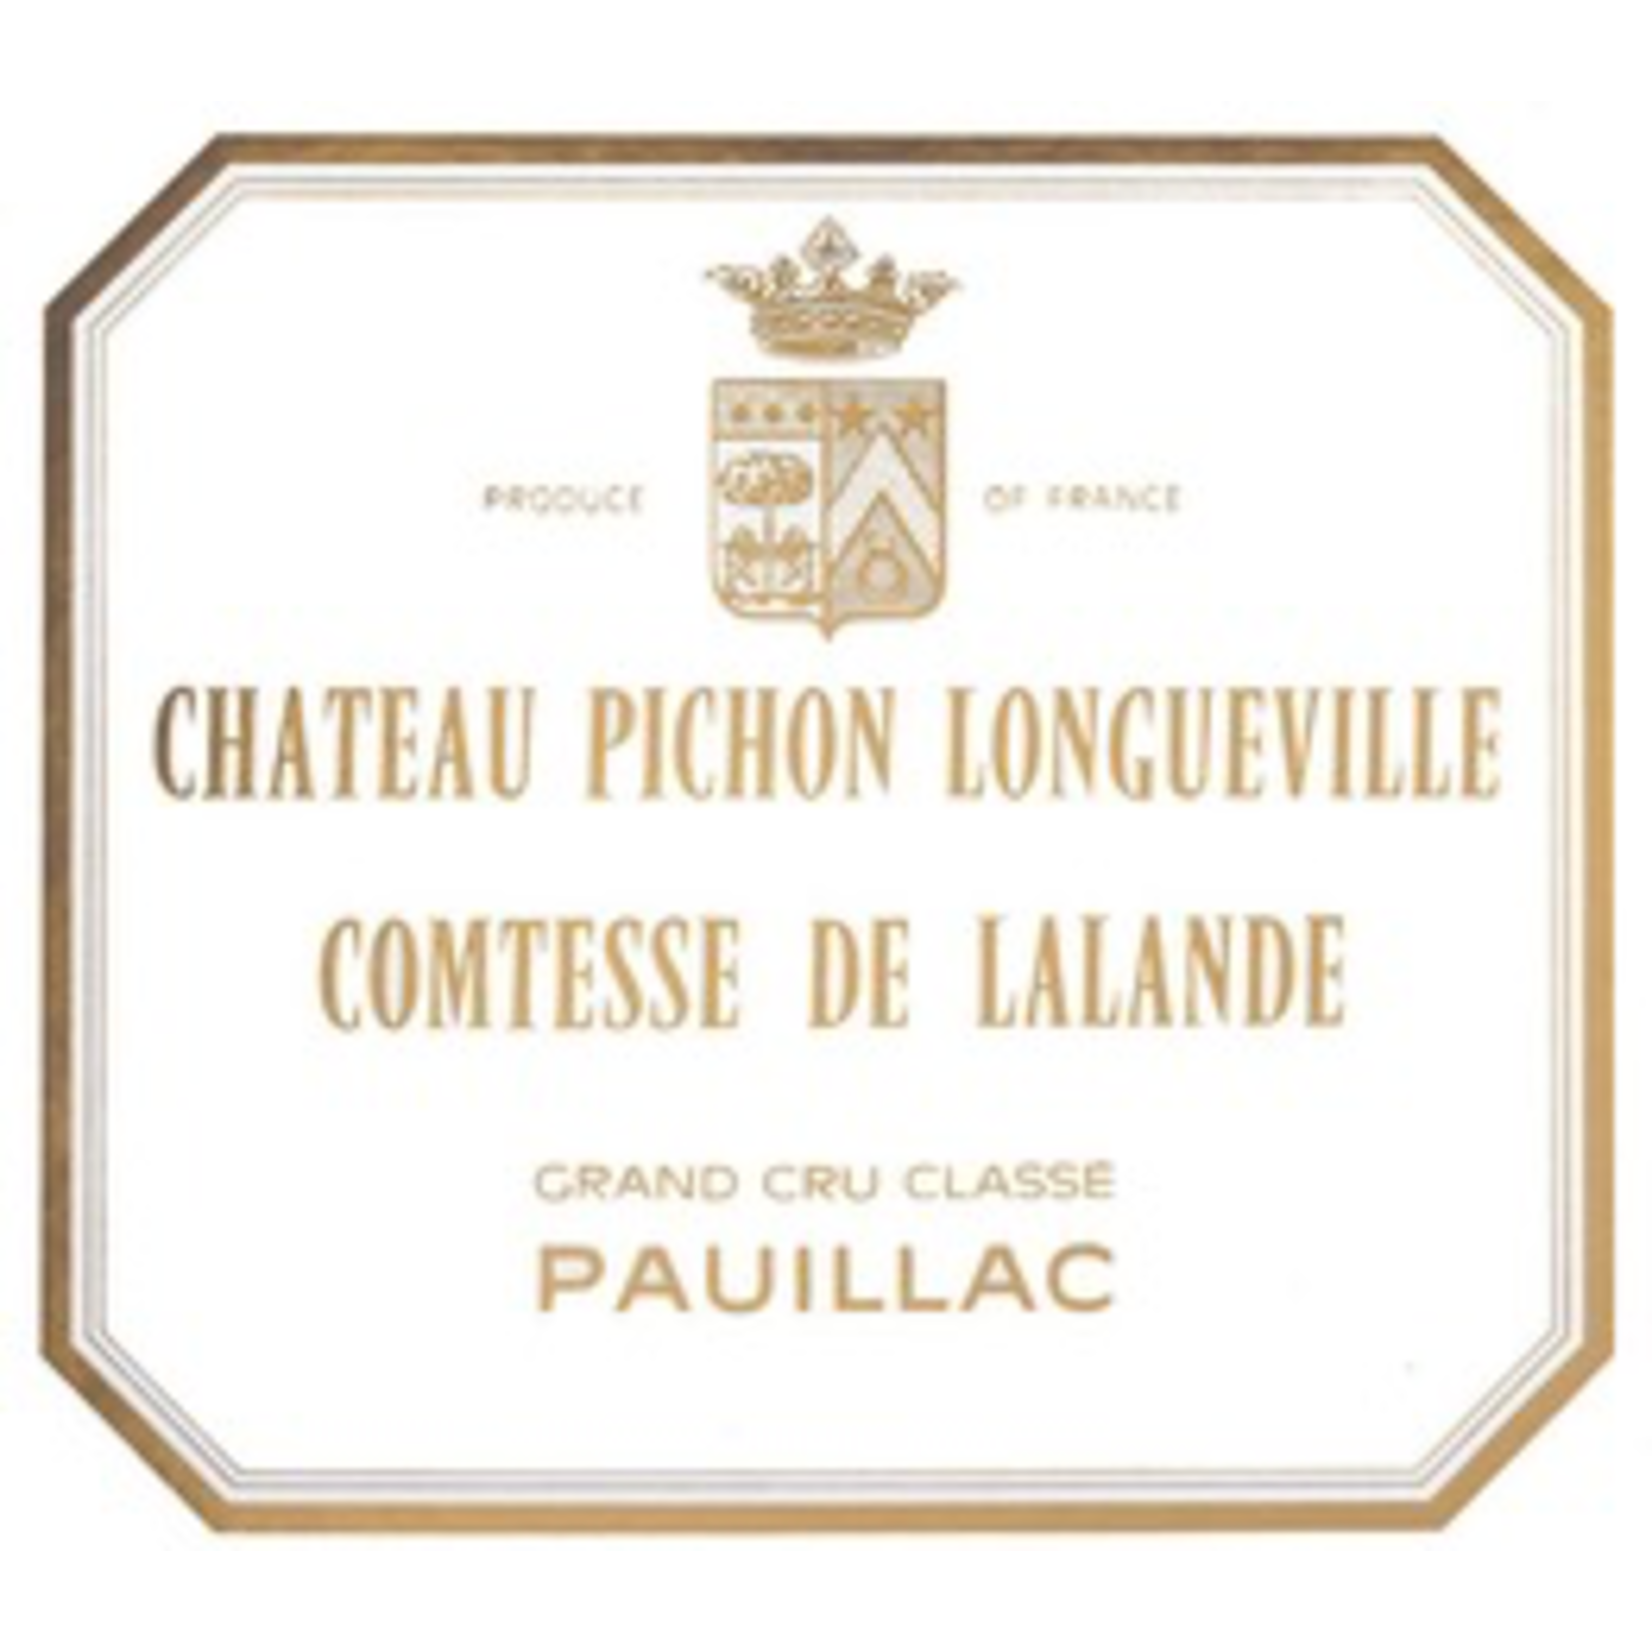 Wine Comtesse de Lalande 2018